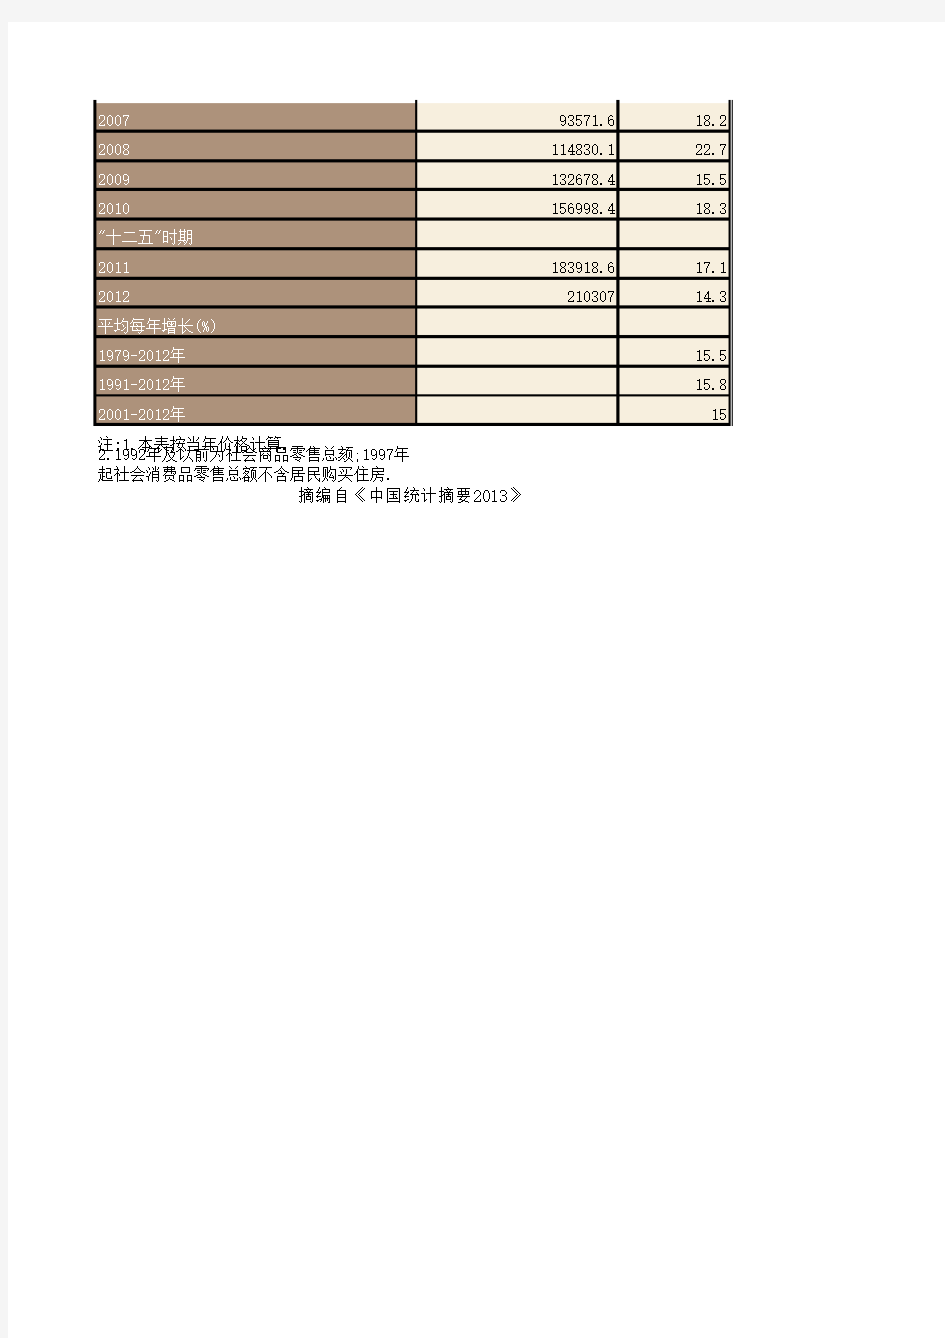 中国历年社会消费品零售总额统计(1978-2012)